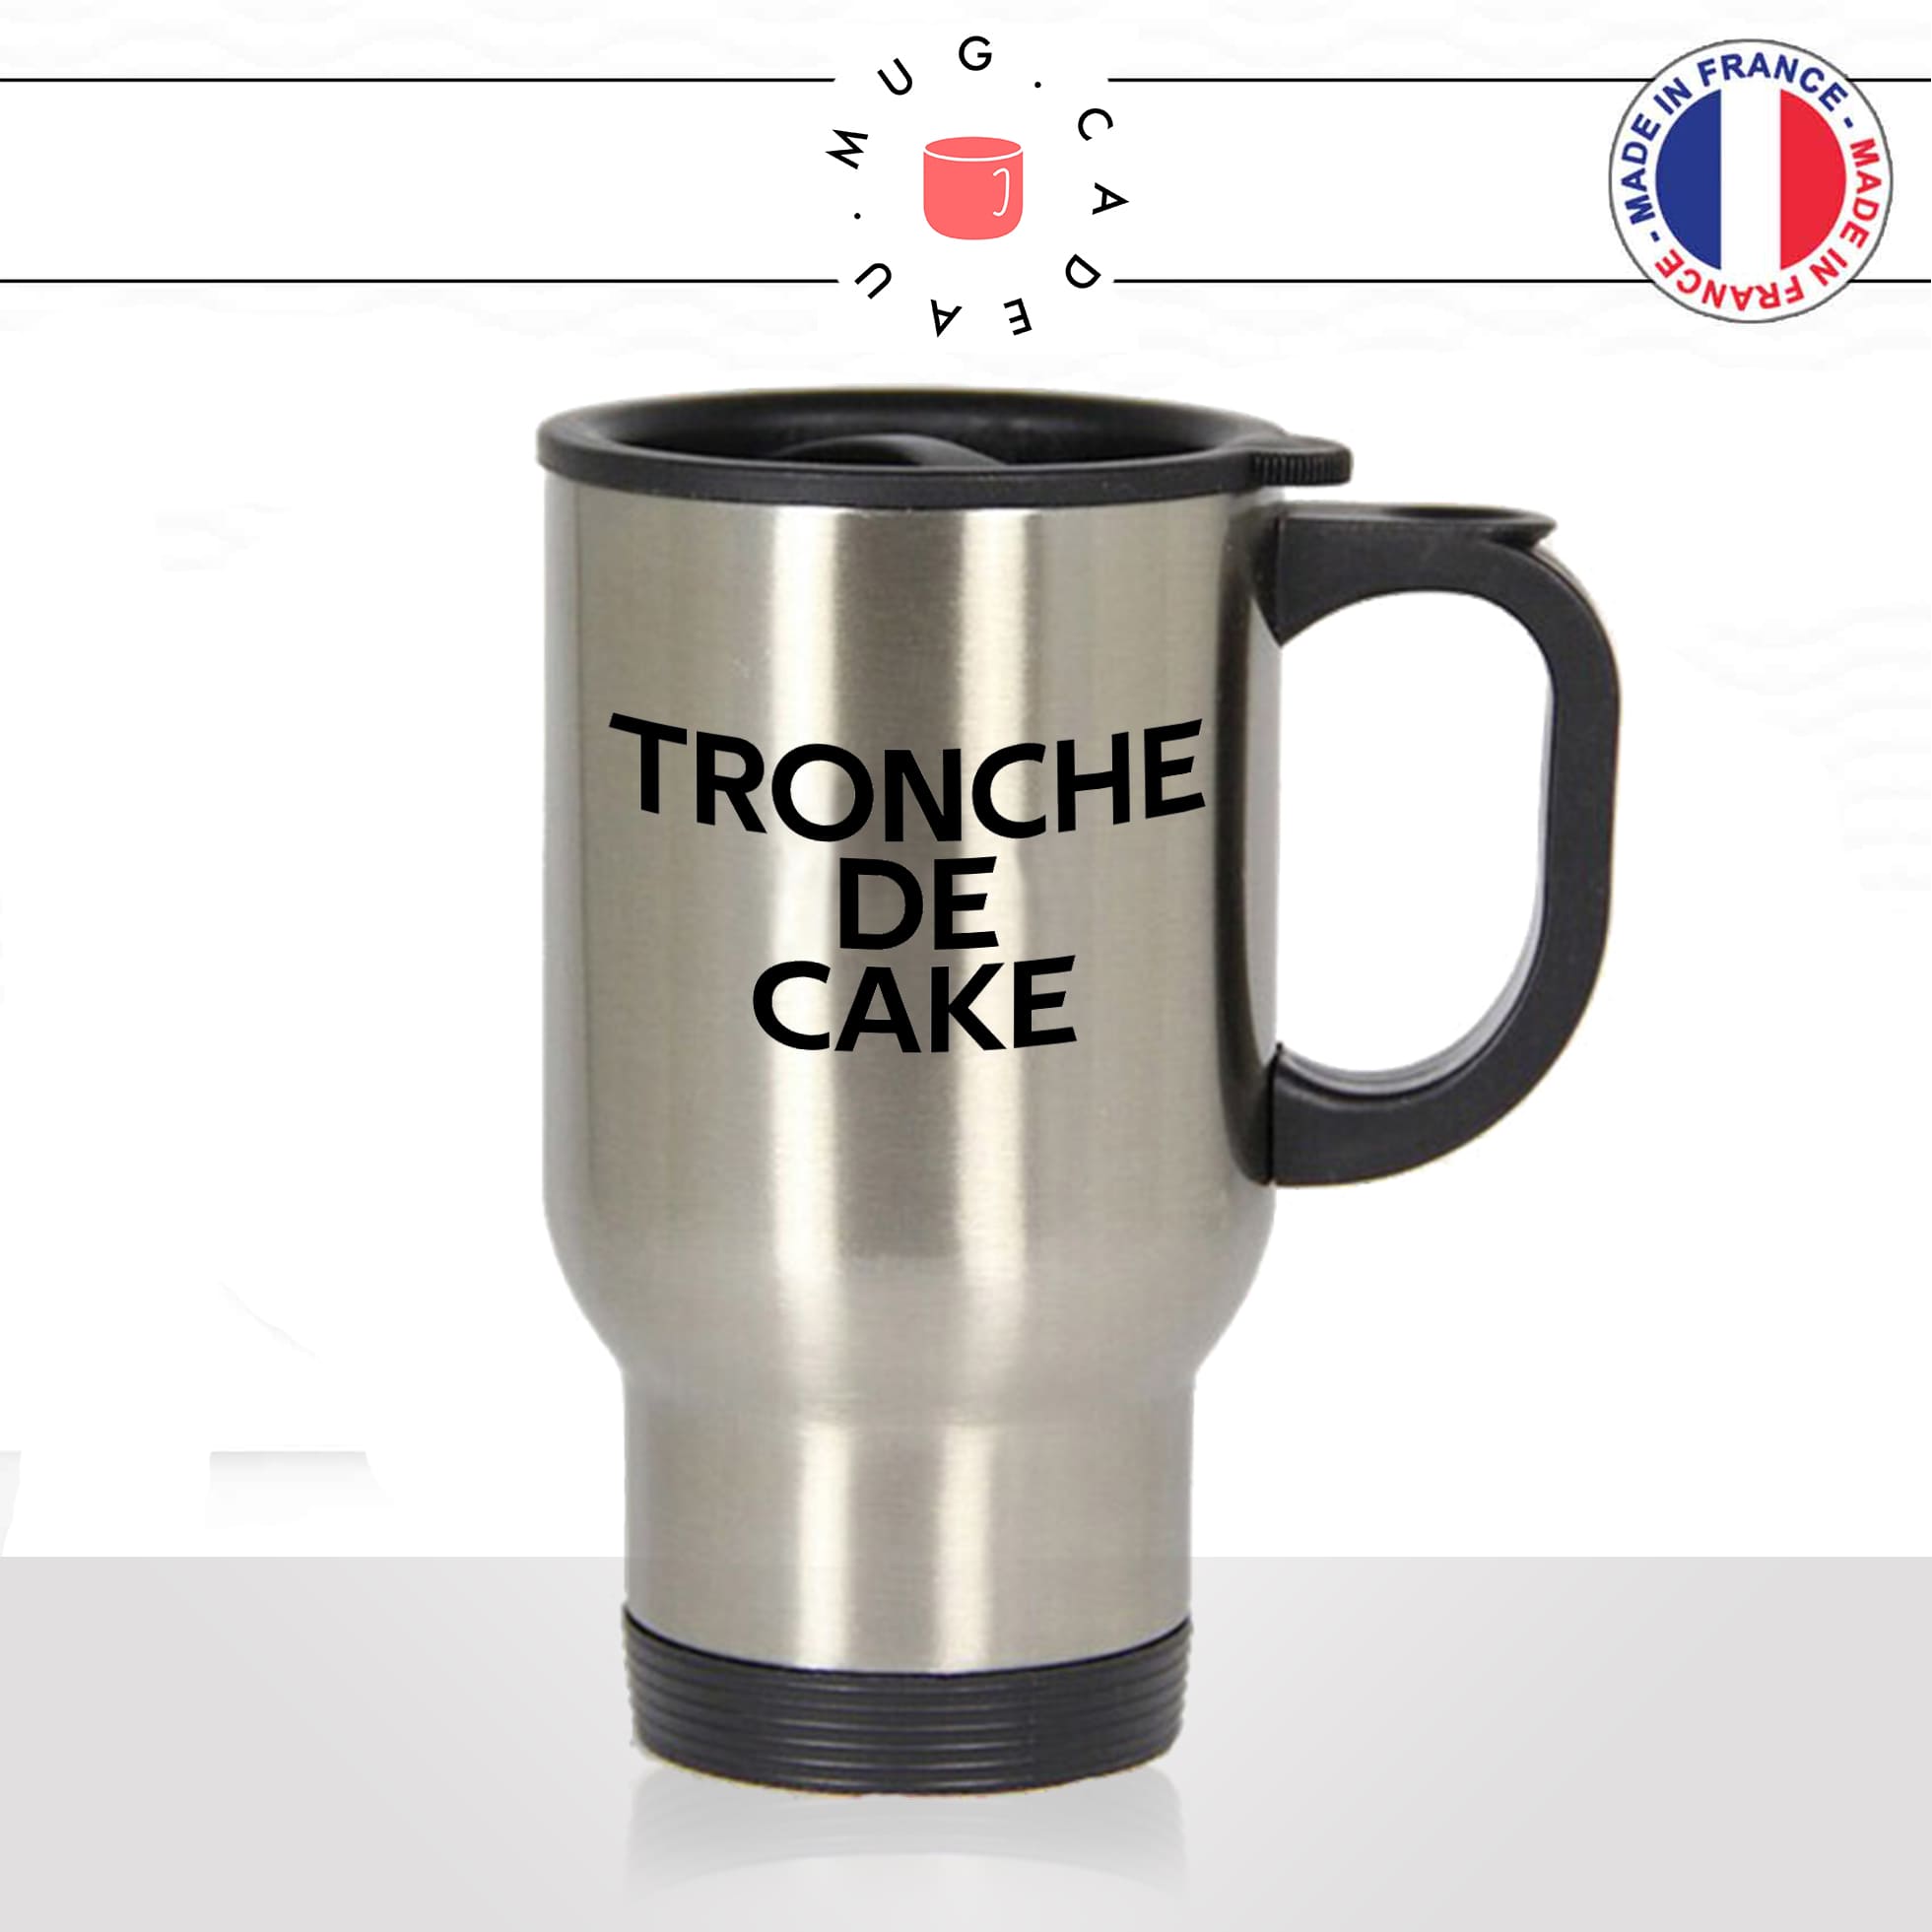 mug-tasse-thermos-isotherme-voyage-tronche-de-cake-expression-francaise-anglais-gateau-tete-de-cul-humour-fun-idée-cadeau-originale-cool2